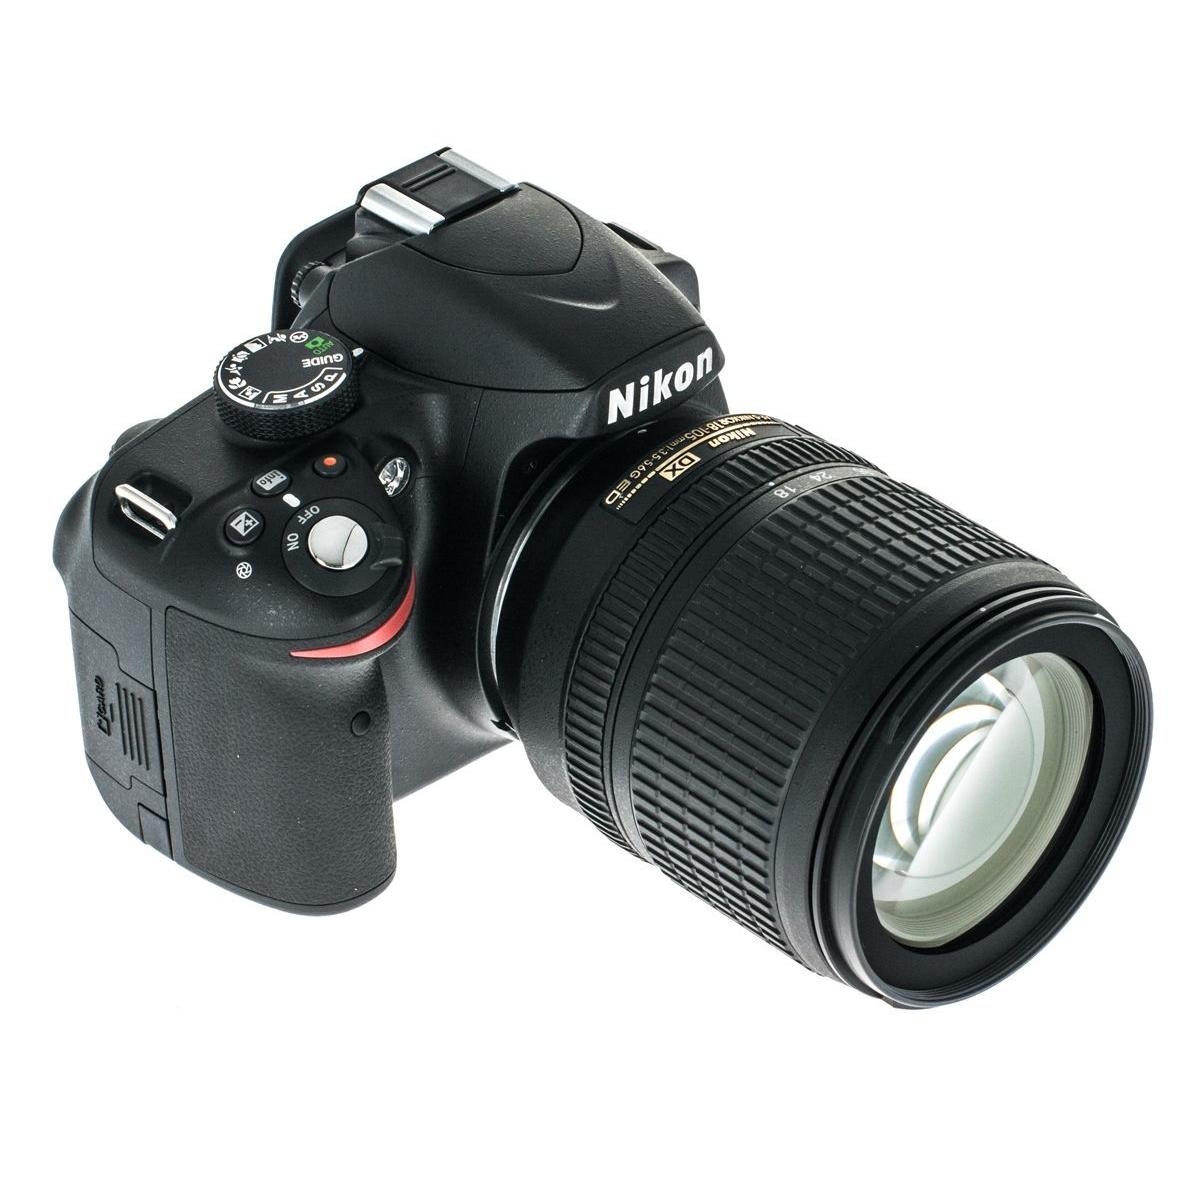 18 105 vr. Nikon d3200 Kit. Набор фототехники.